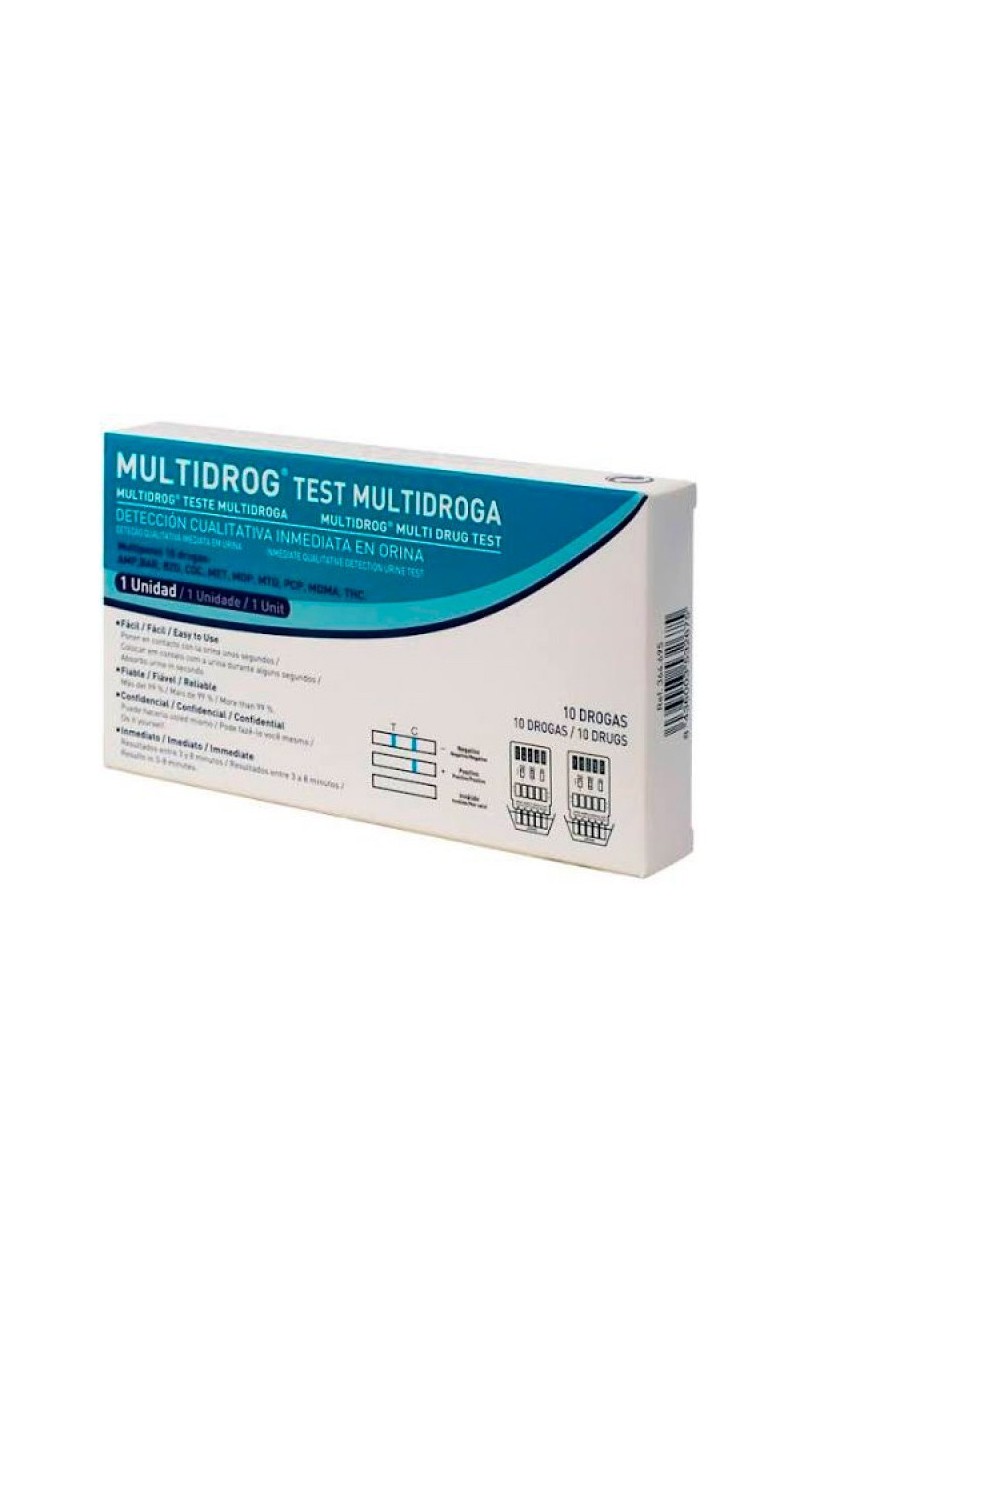 Stada Multidrug Test With Urine 10 Drugs